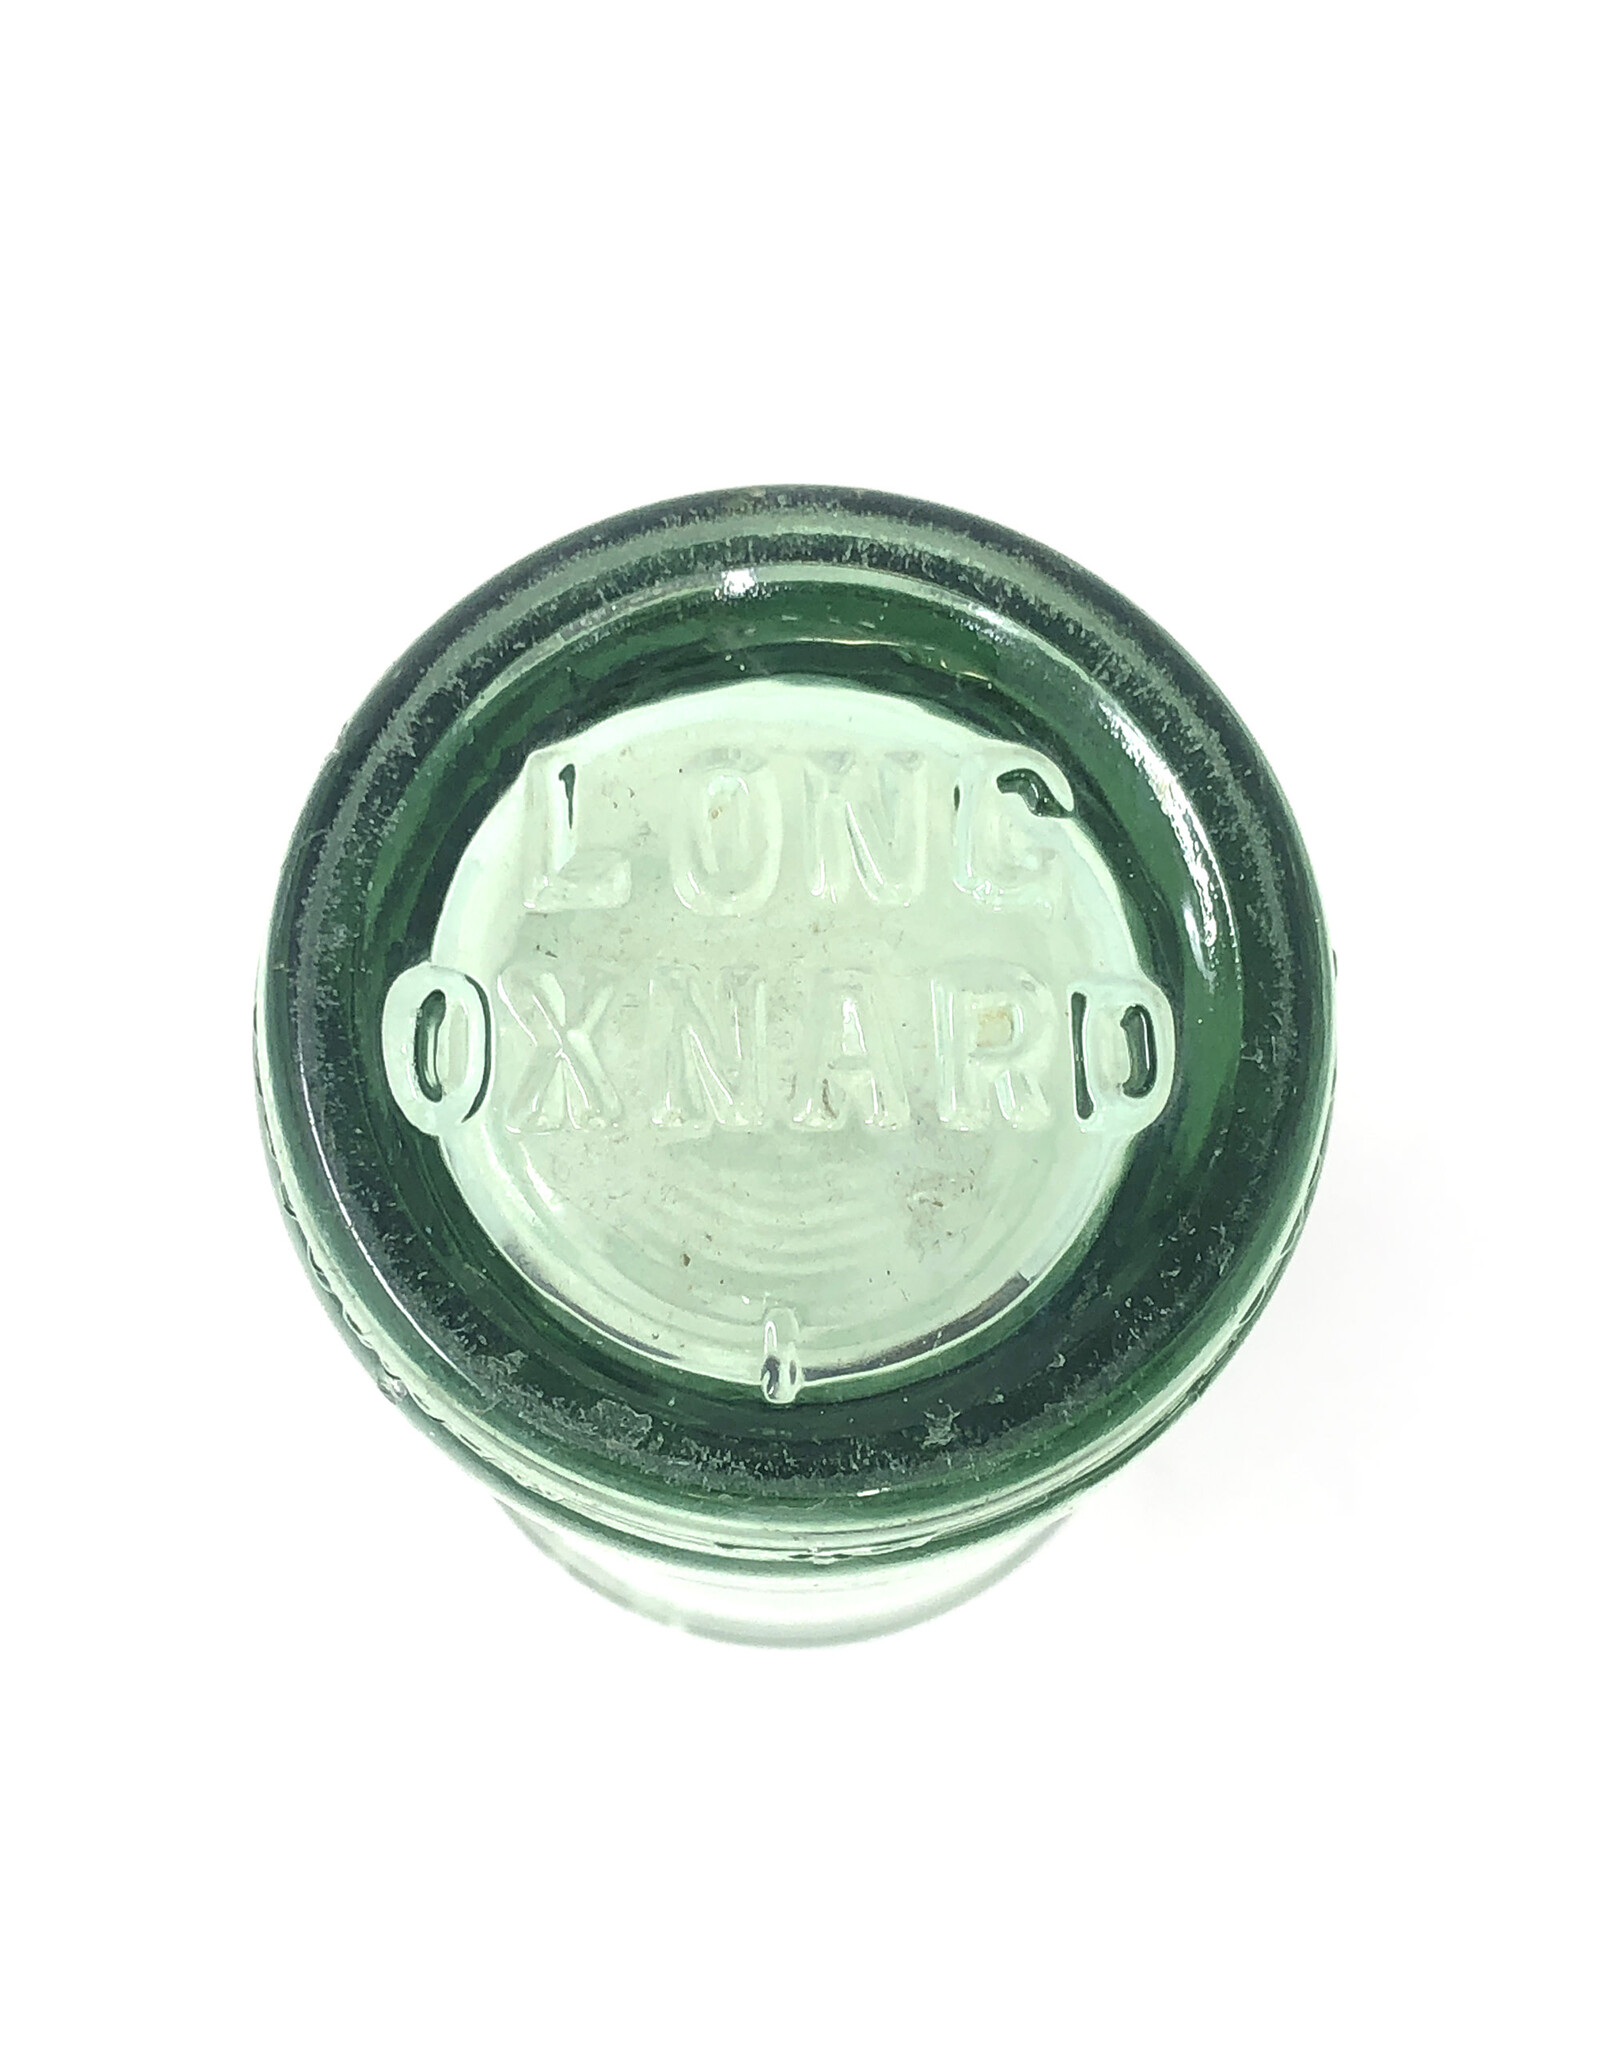 Antique Oxnard Glass Bottle